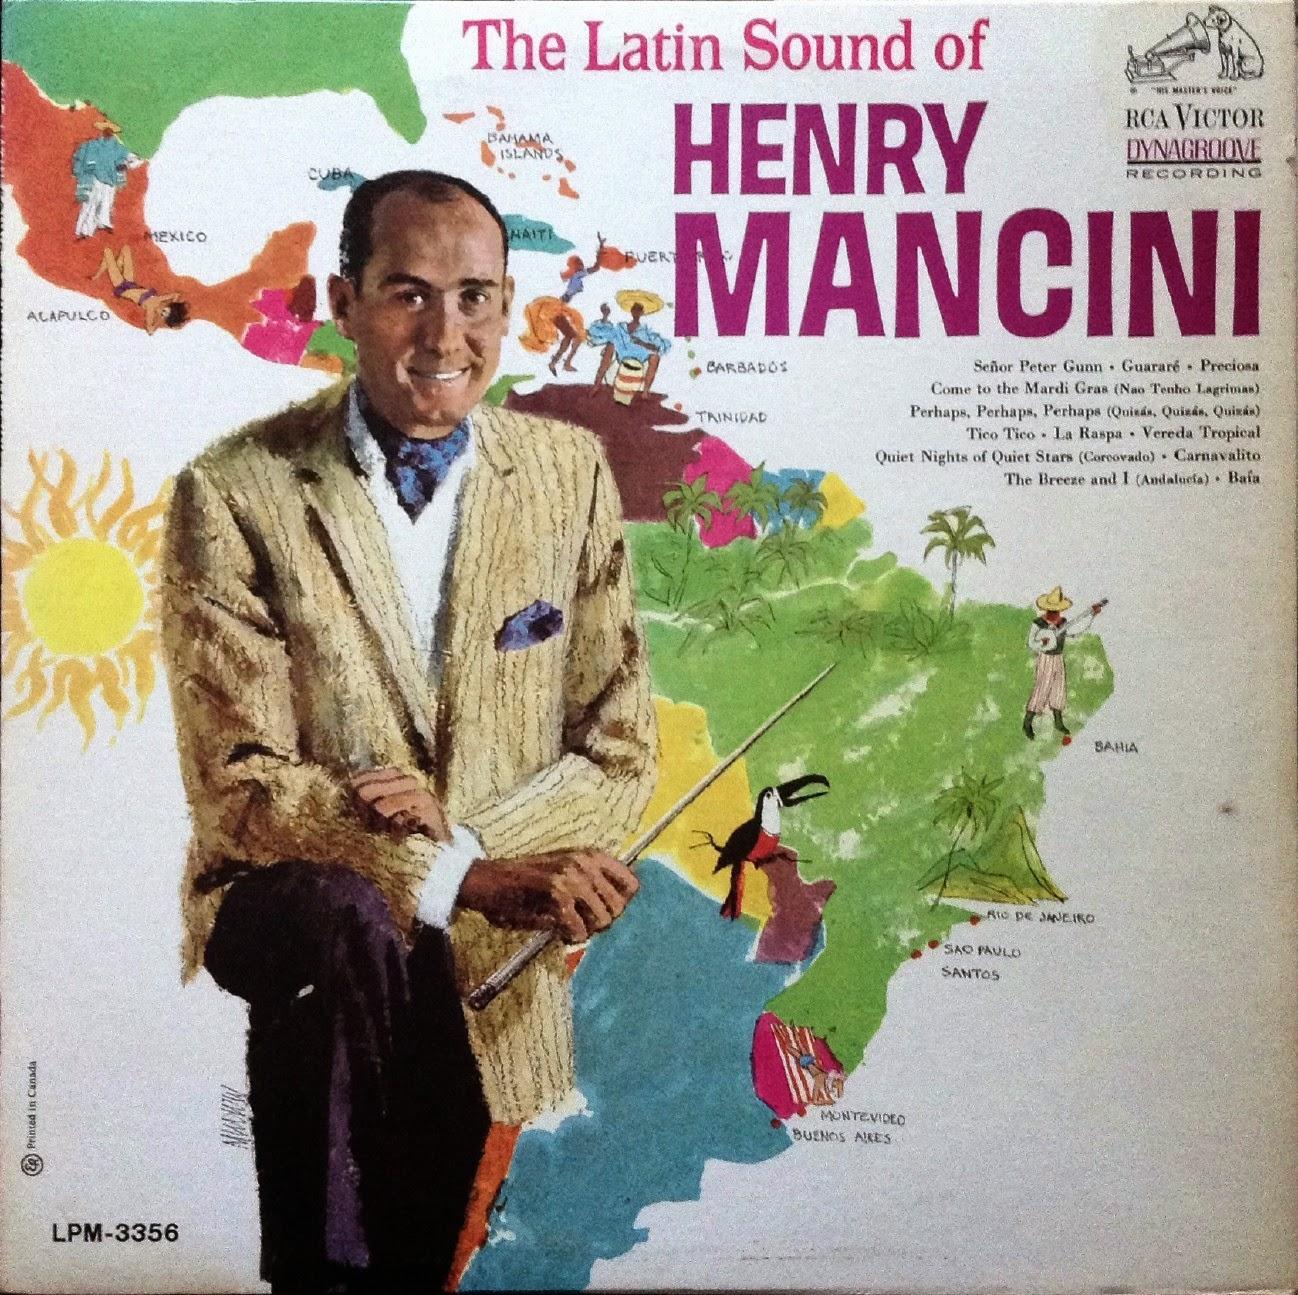 La pochette de l'album "The Latin Sound" d'Henry Mancini. [RCA Victor]